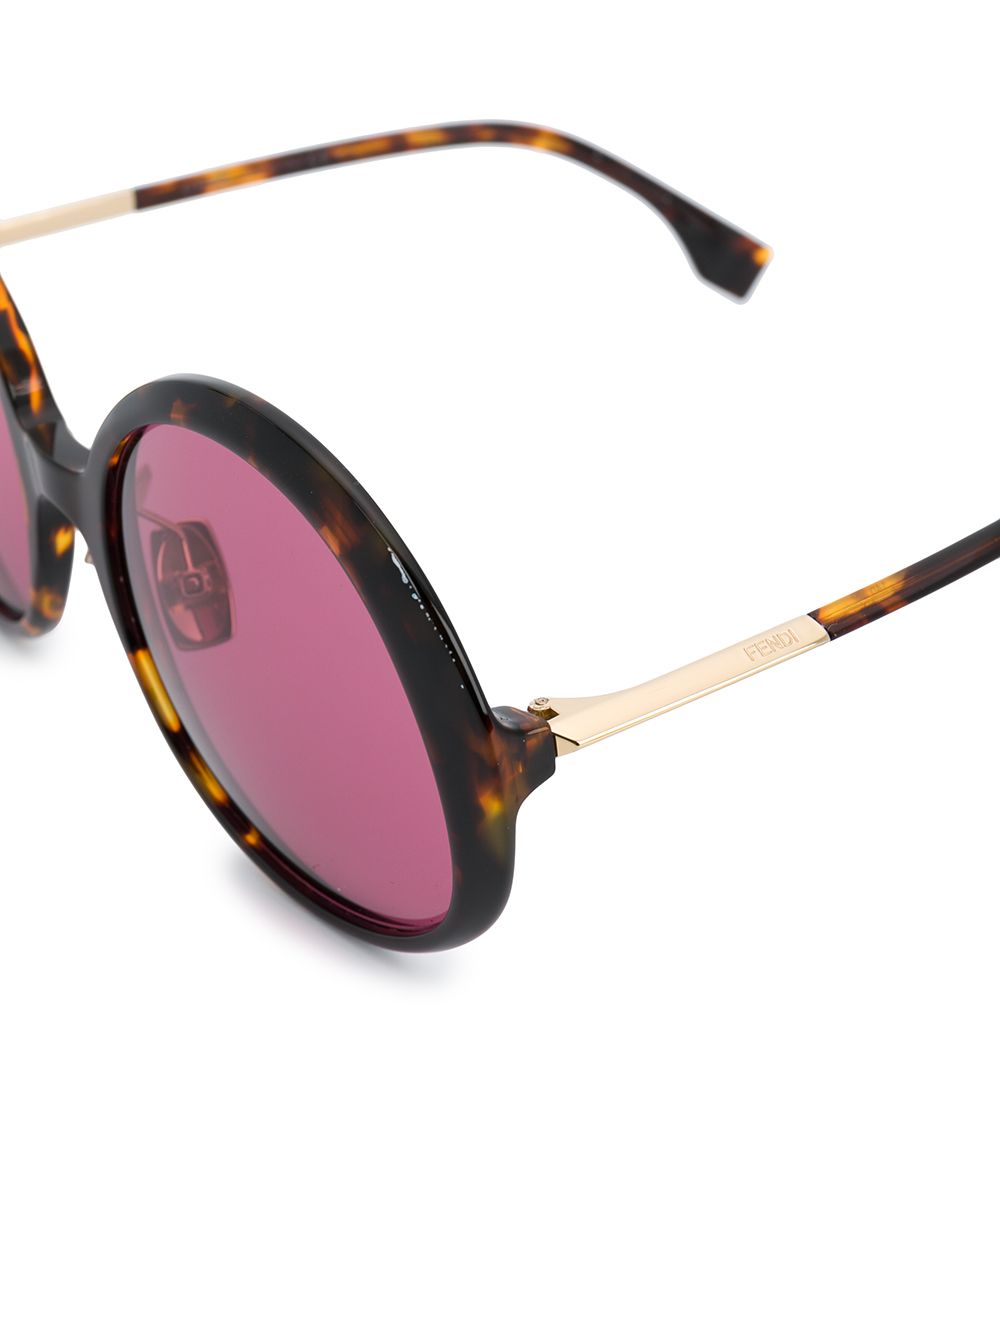 фото Fendi eyewear солнцезащитные очки в массивной оправе черепаховой расцветки